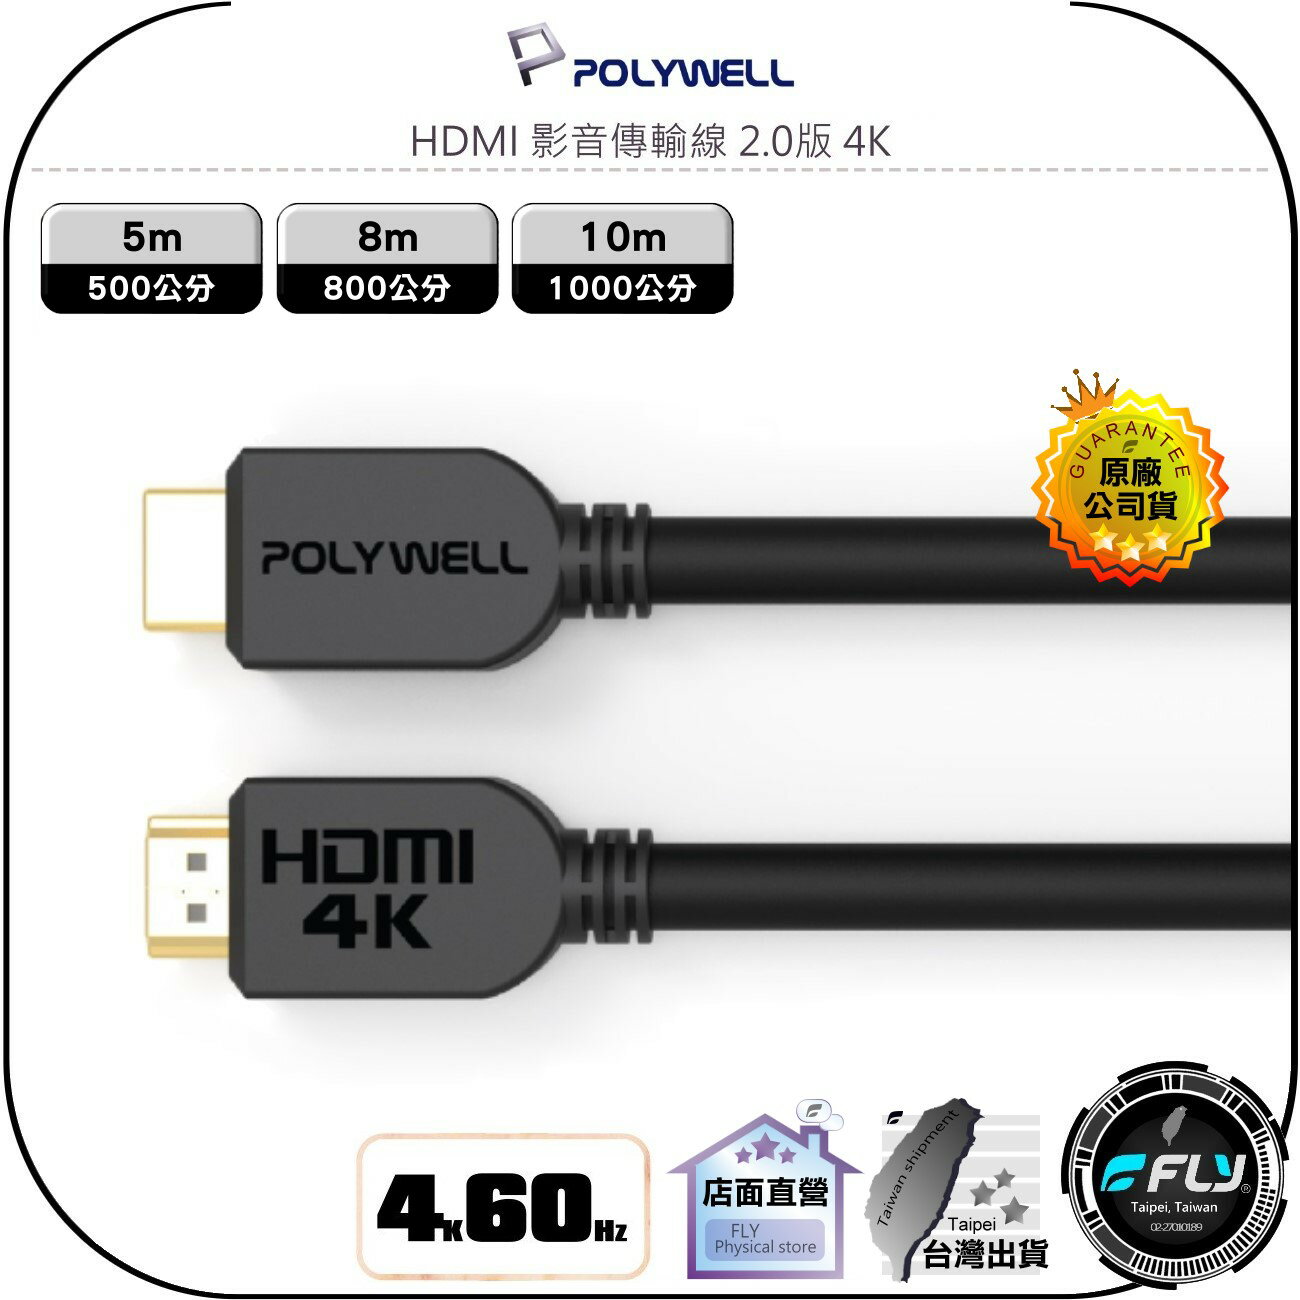 【飛翔商城】POLYWELL 寶利威爾 HDMI 影音傳輸線 2.0版 4K◉UHD◉5m/8m/10m